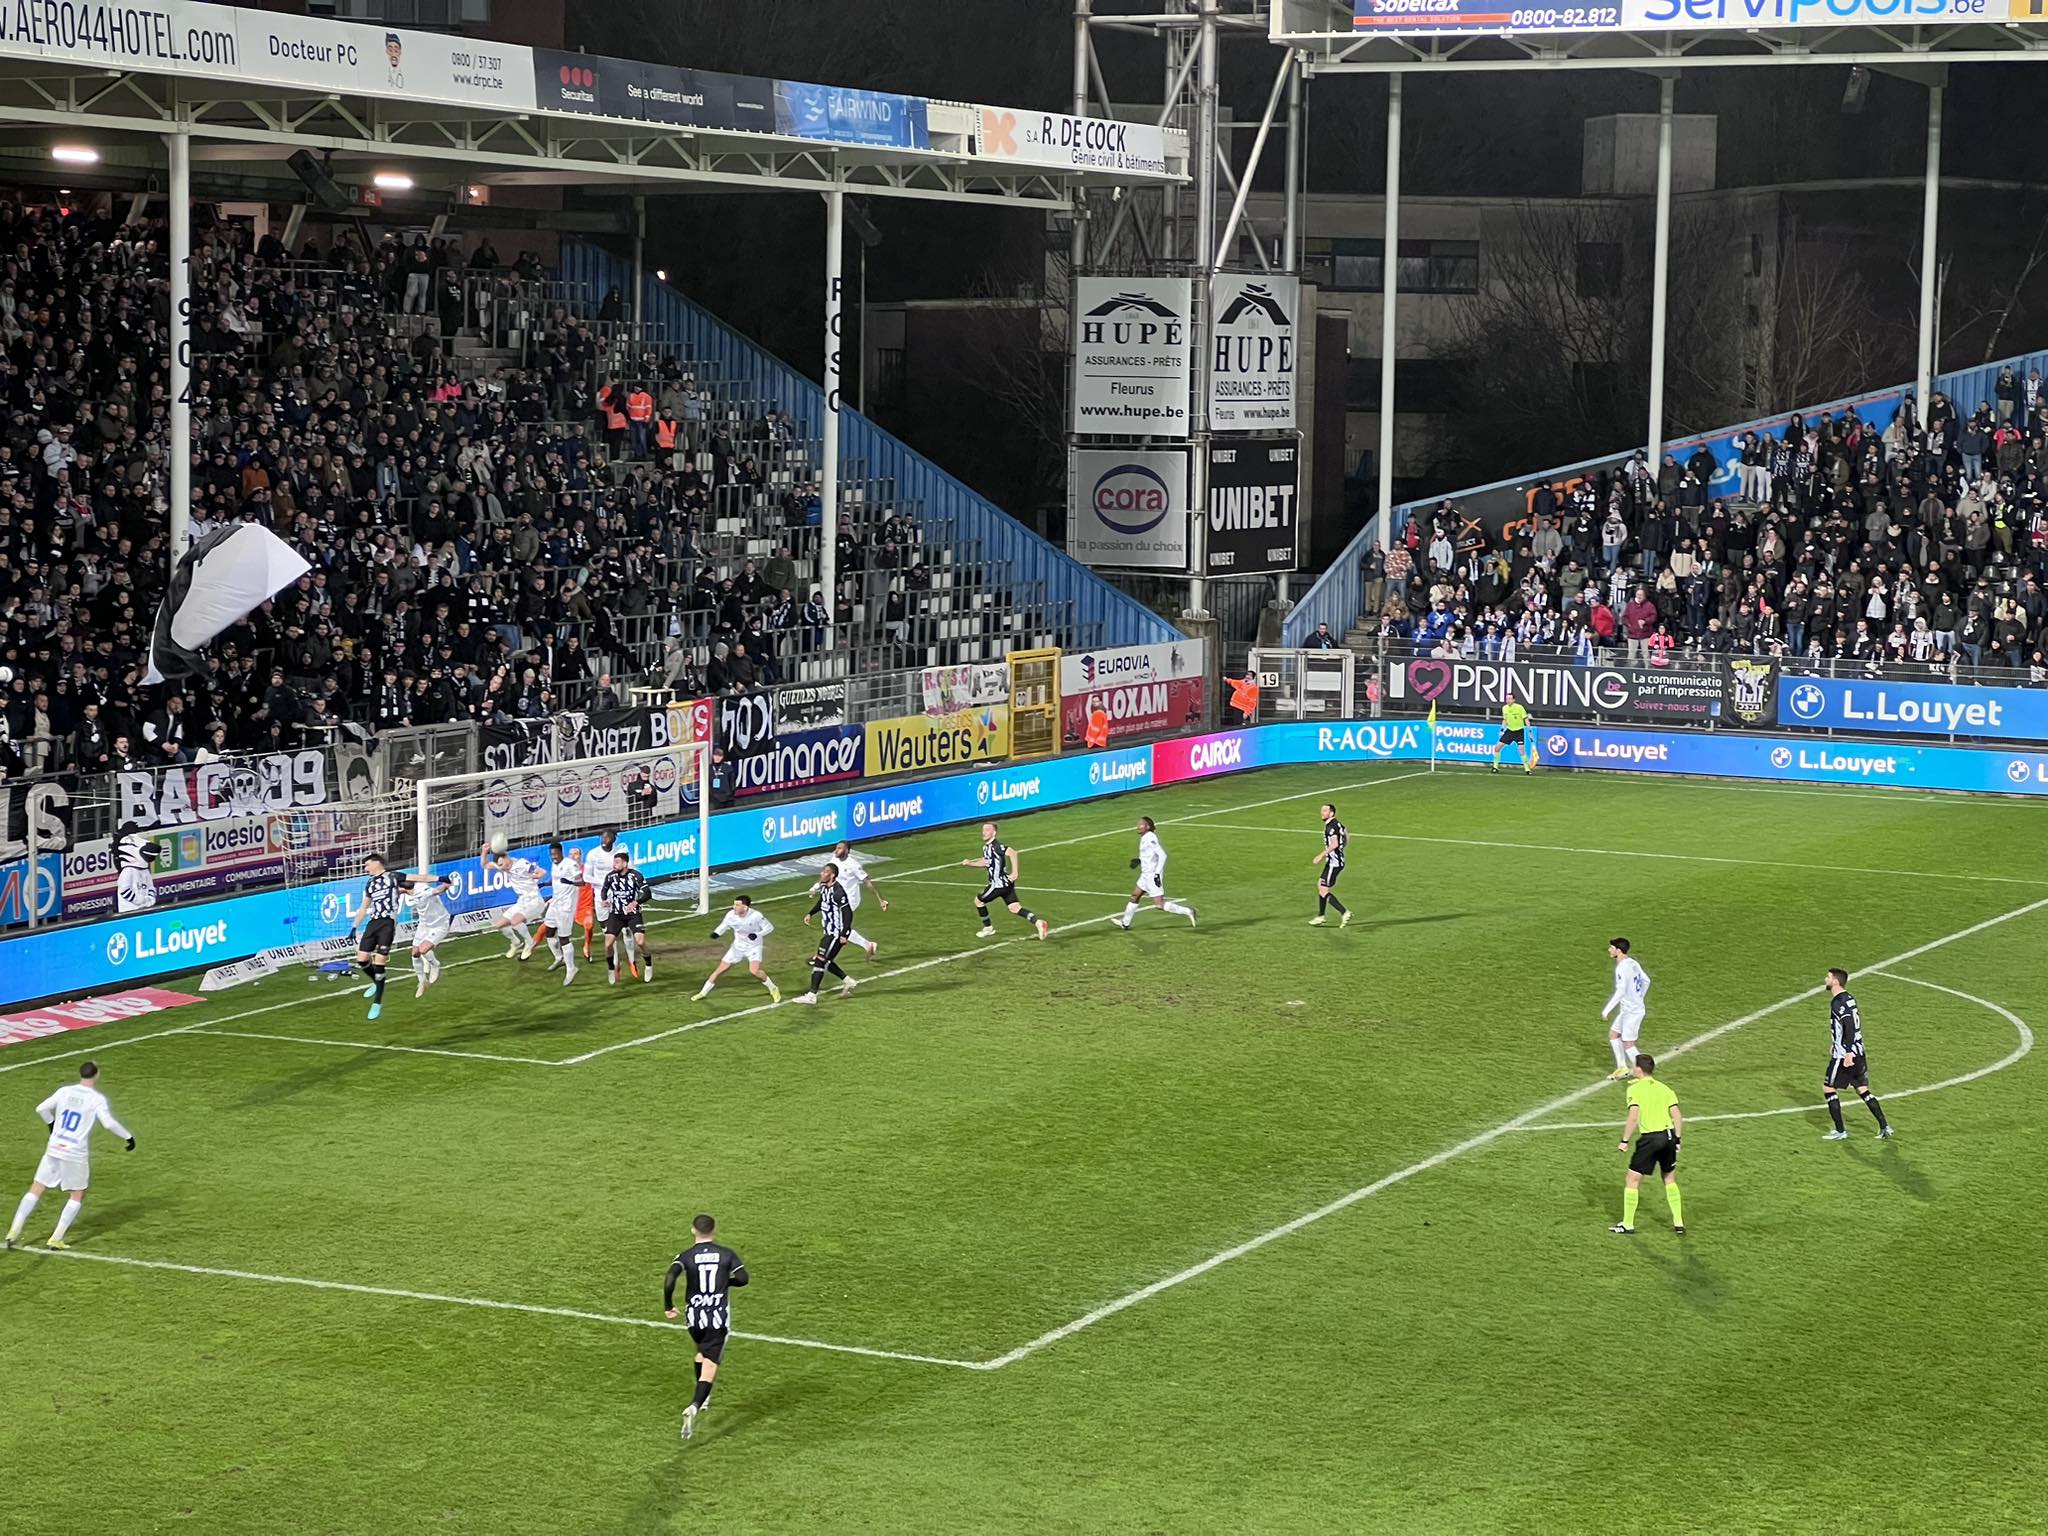 Une nouvelle défaite pour Charleroi face à Genk qui se rapproche des play-downs